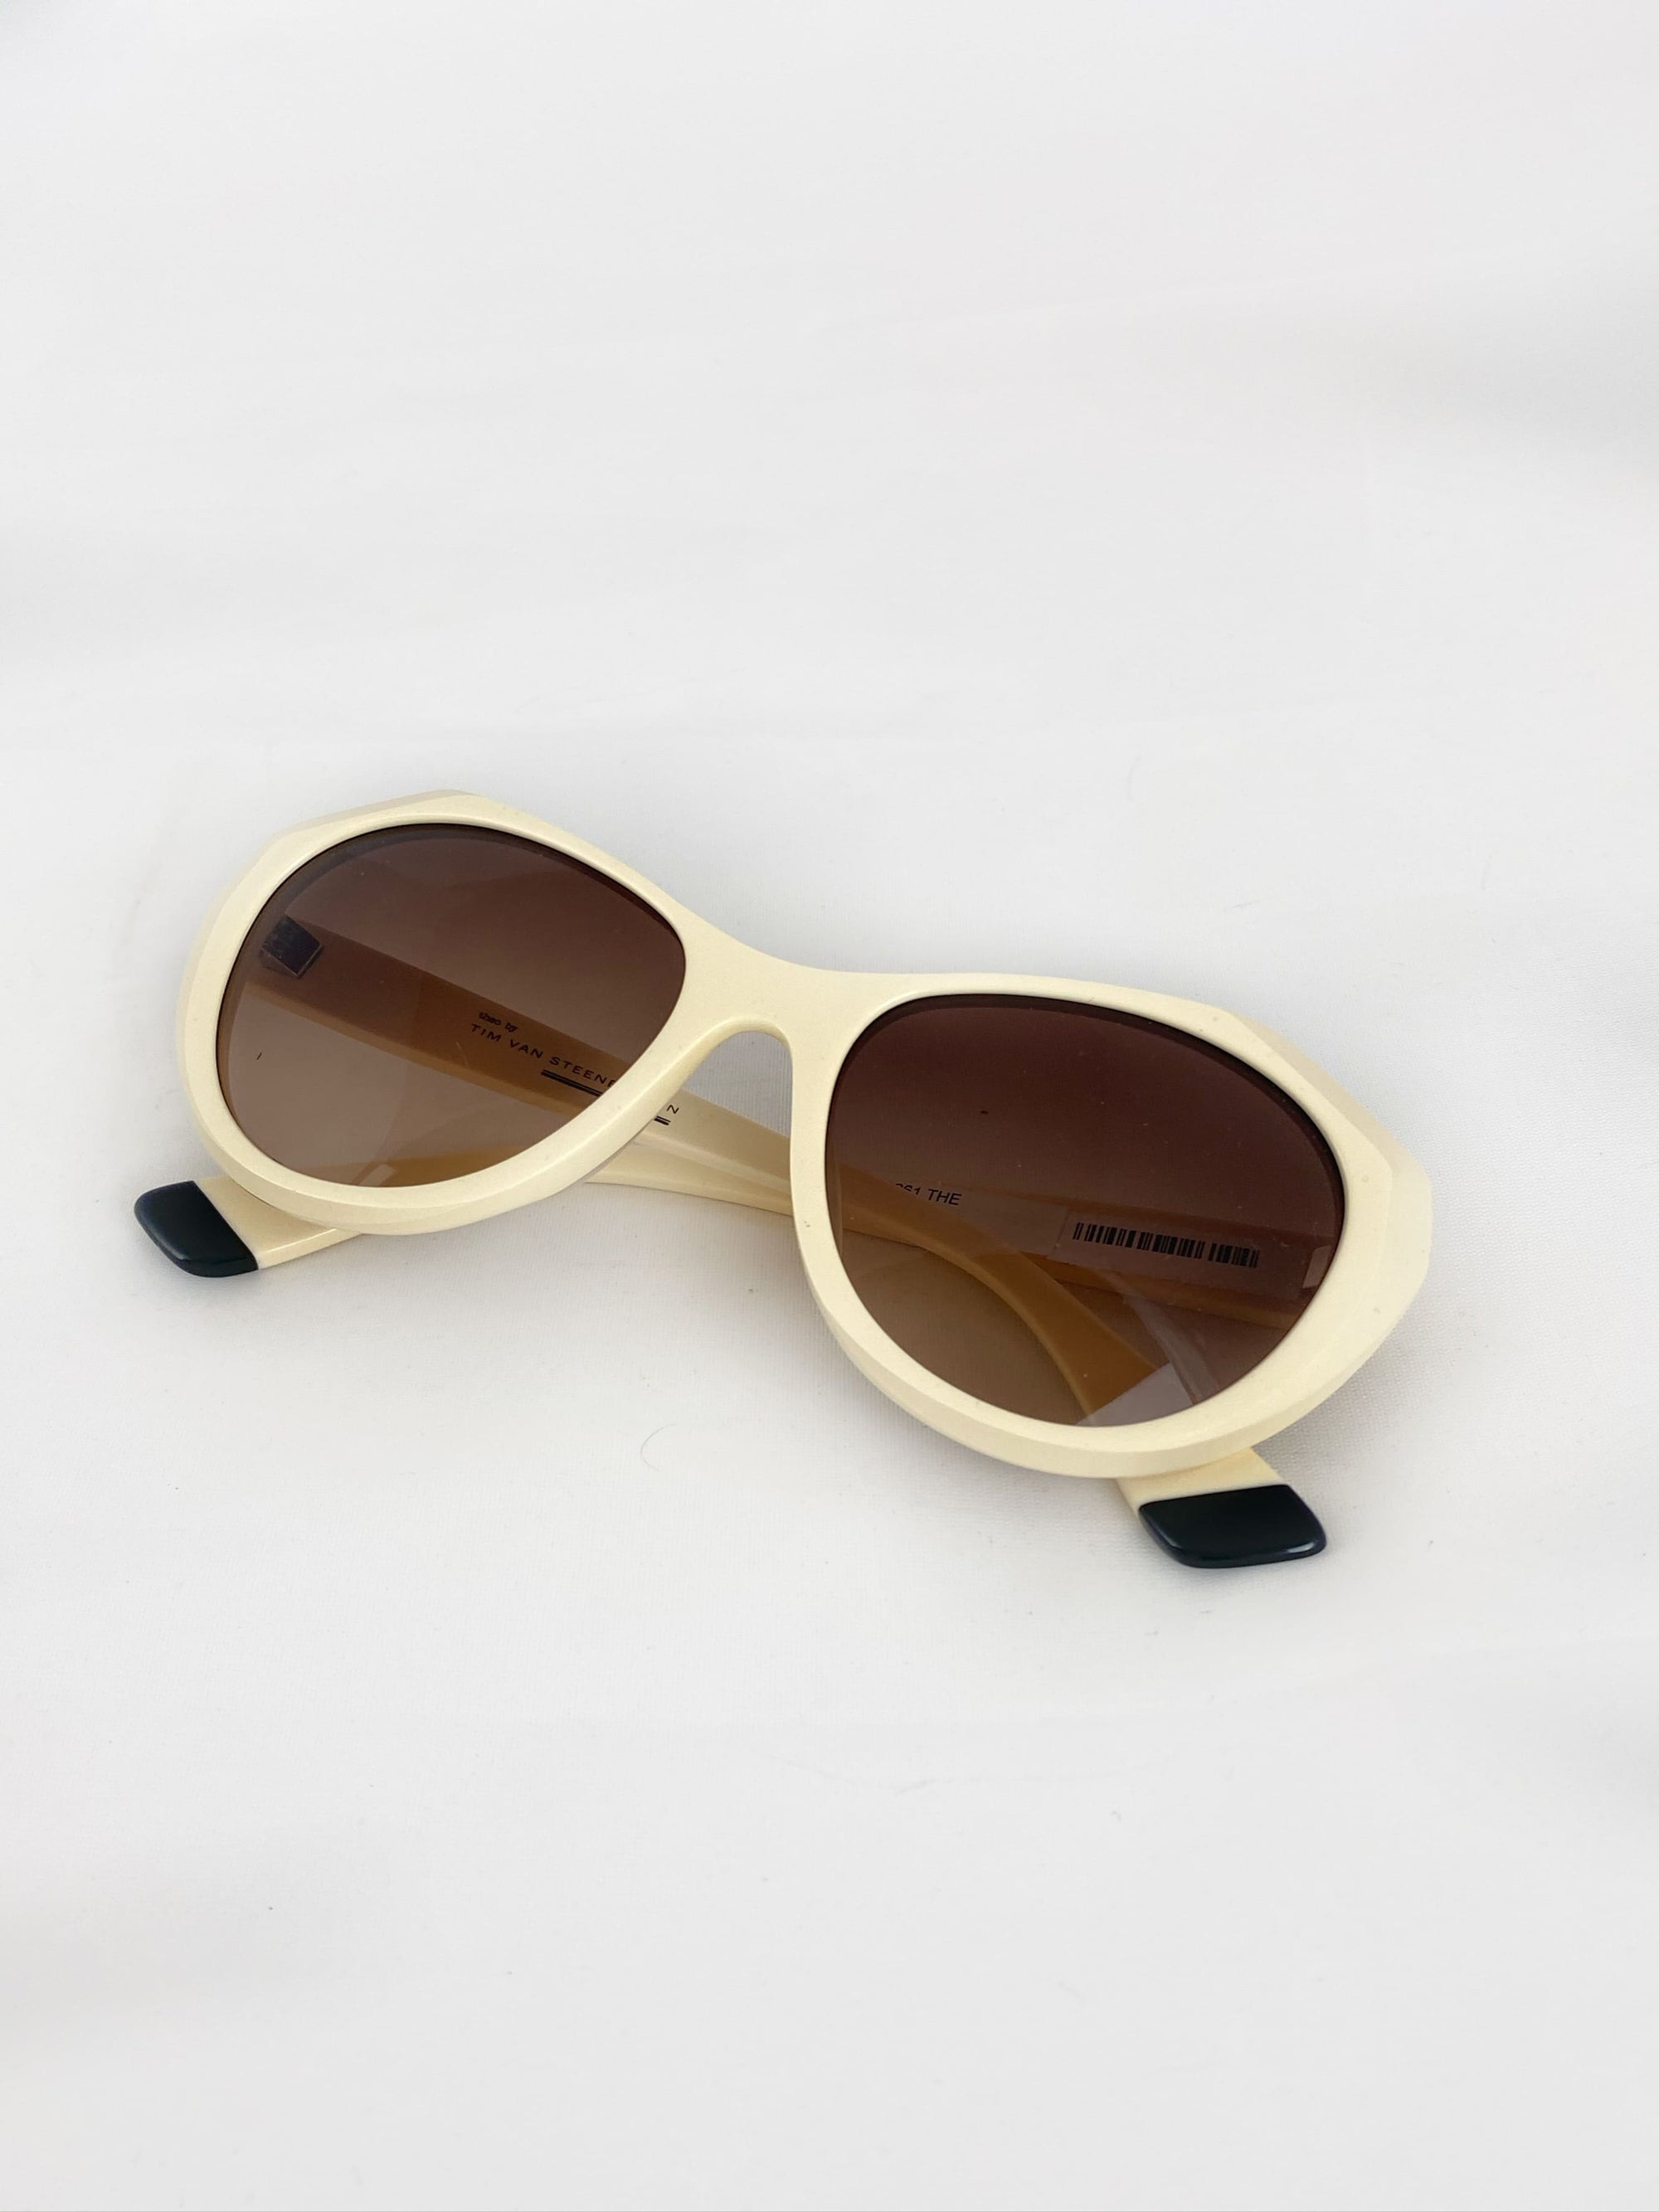 Produktbild der Theo by Tim Van Steenbergen Sunglasses Creme von oben vor weißem Hintergrund.